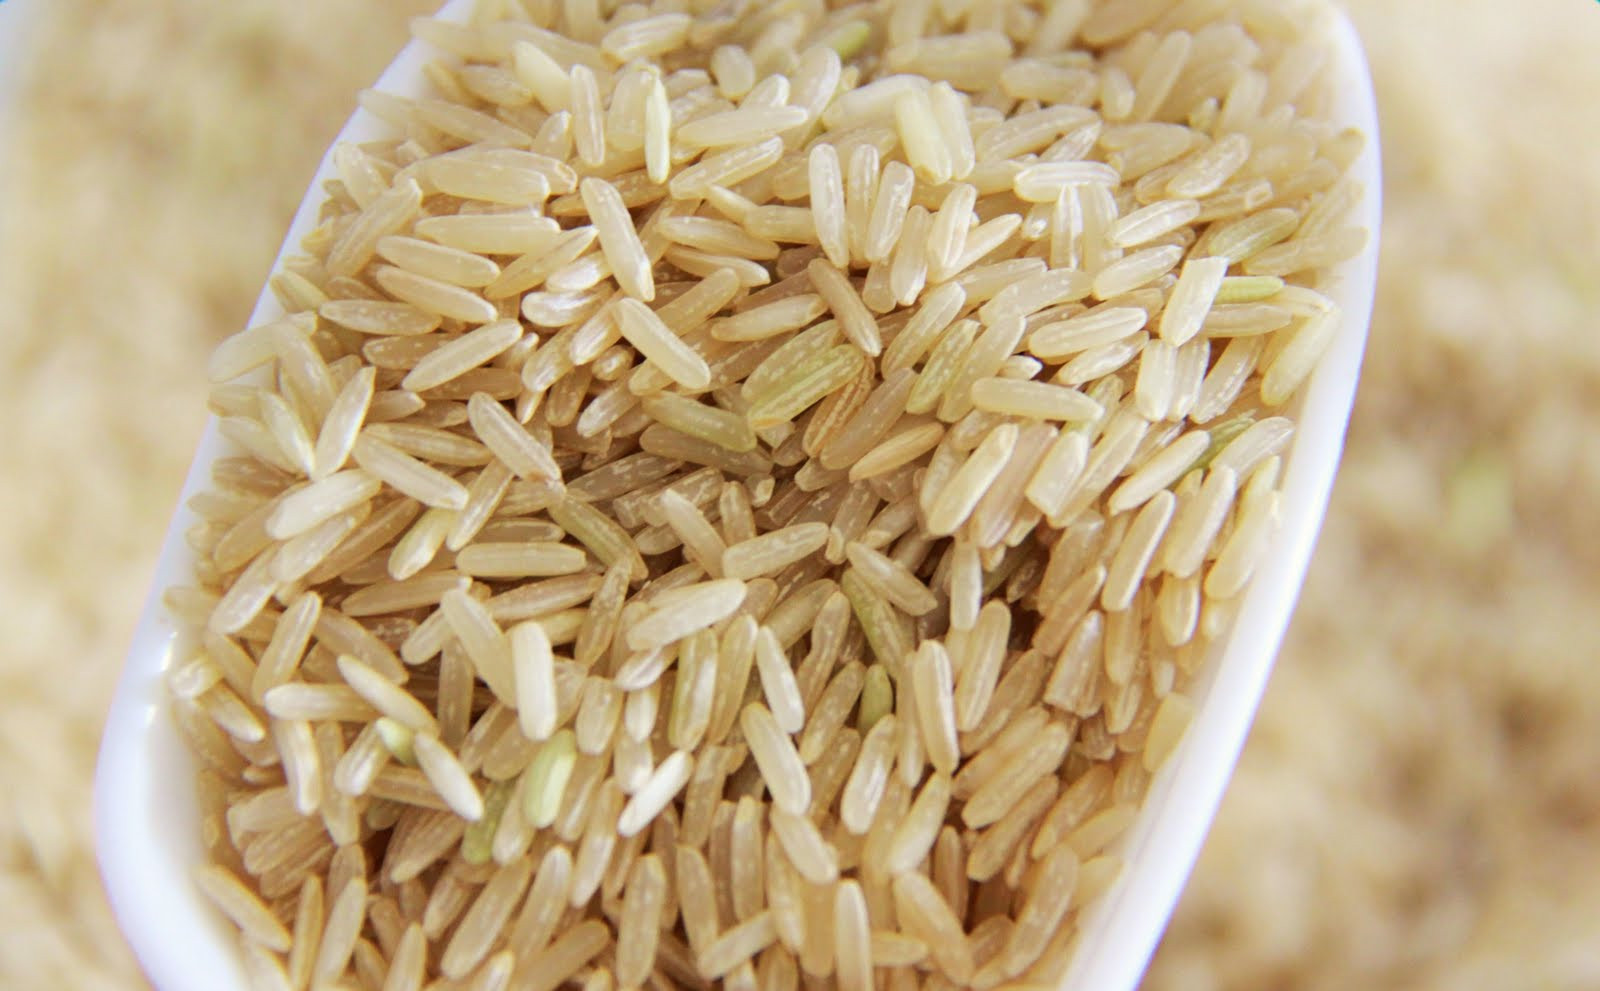 Làm giàu từ gạo hữu cơ